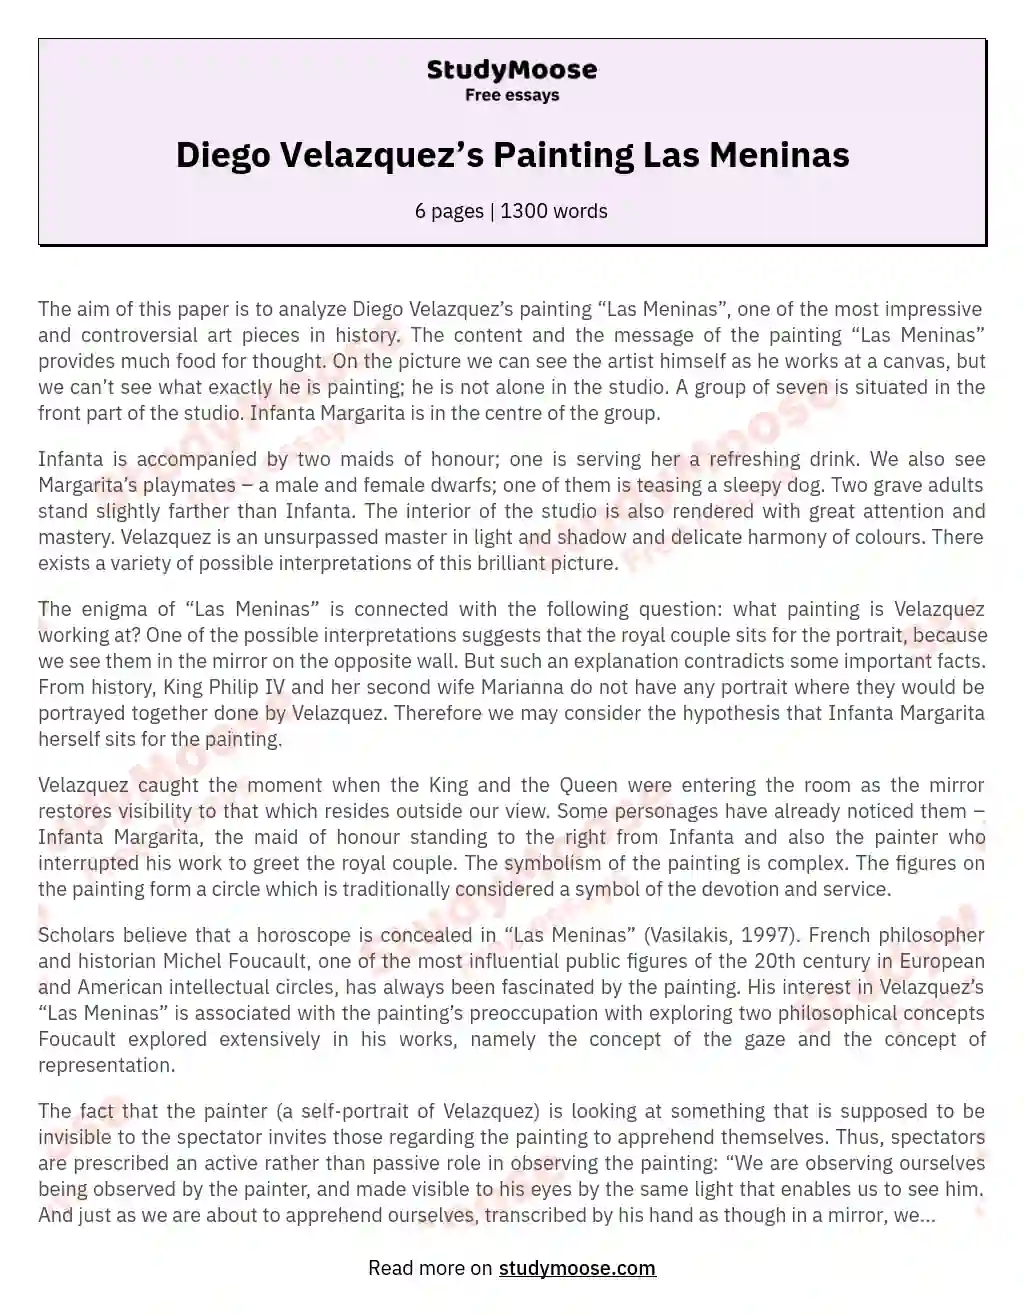 Diego Velazquez’s Painting Las Meninas